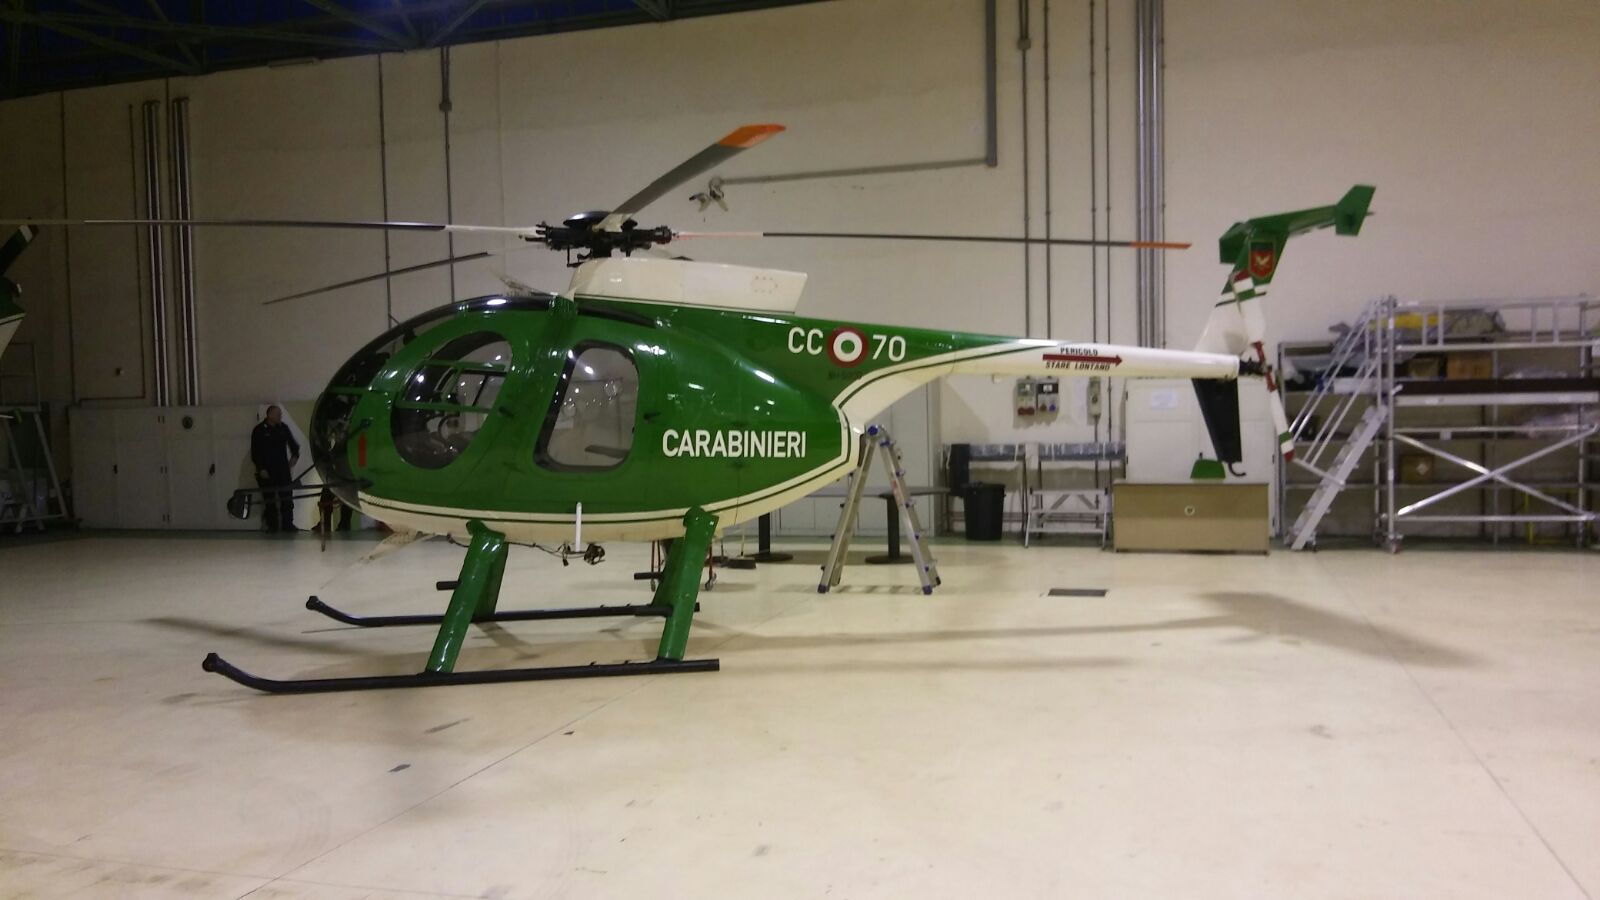 Emergenza neve, Pdm: basta il nome “carabinieri” per rendere gli elicotteri idonei al volo